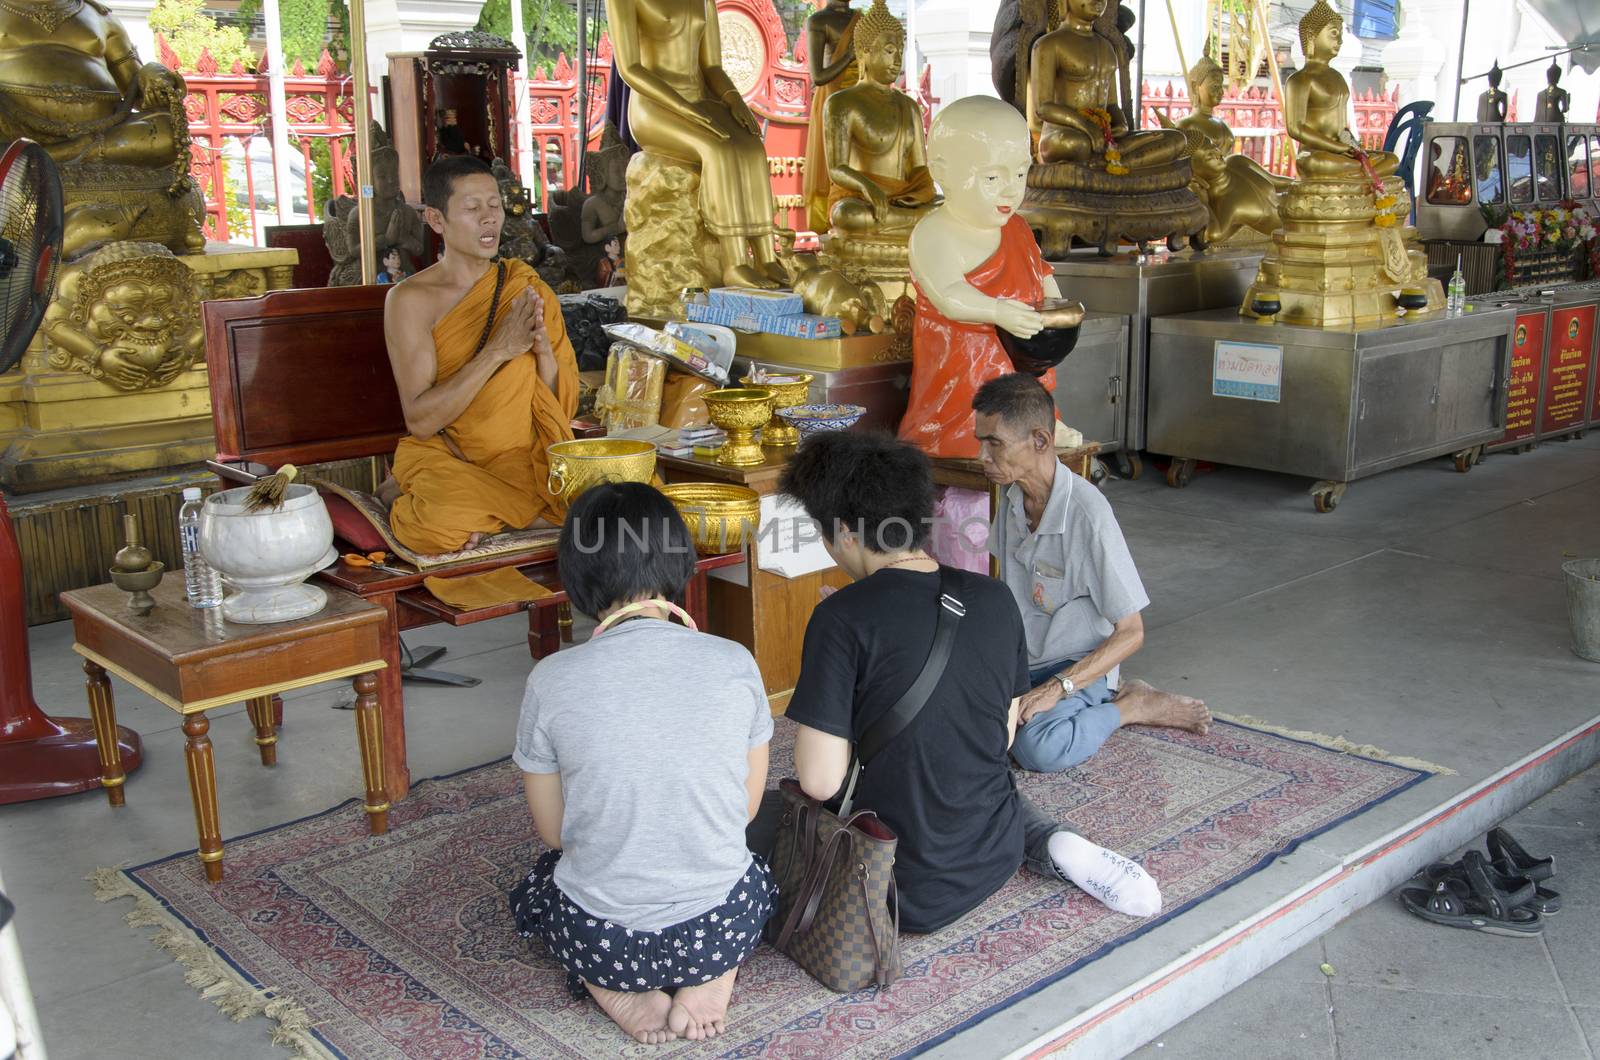 Thai people praying at wat trimit temple Yaowarat Road bangkok thailand 6 July 2014